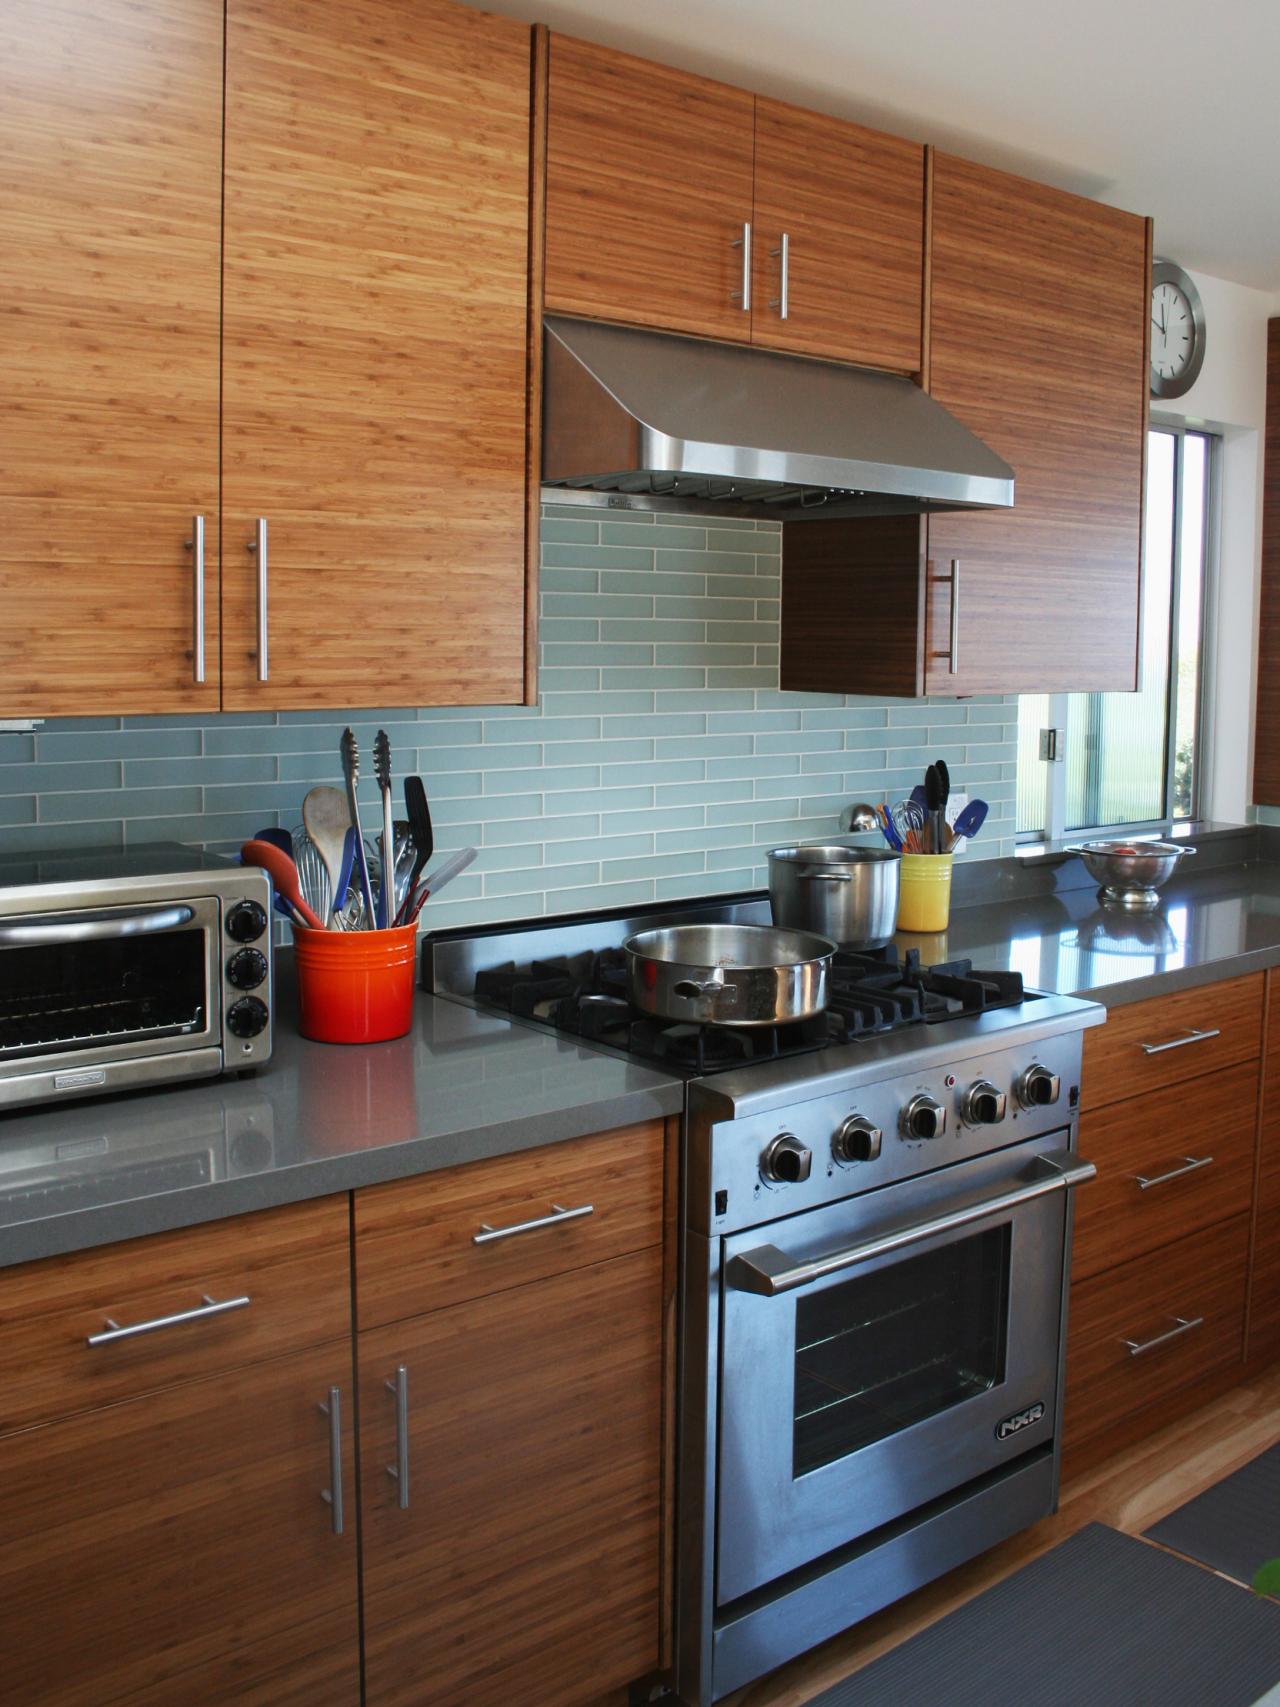 Home | Contemporary kitchen, Modern kitchen design, Kitchen design small